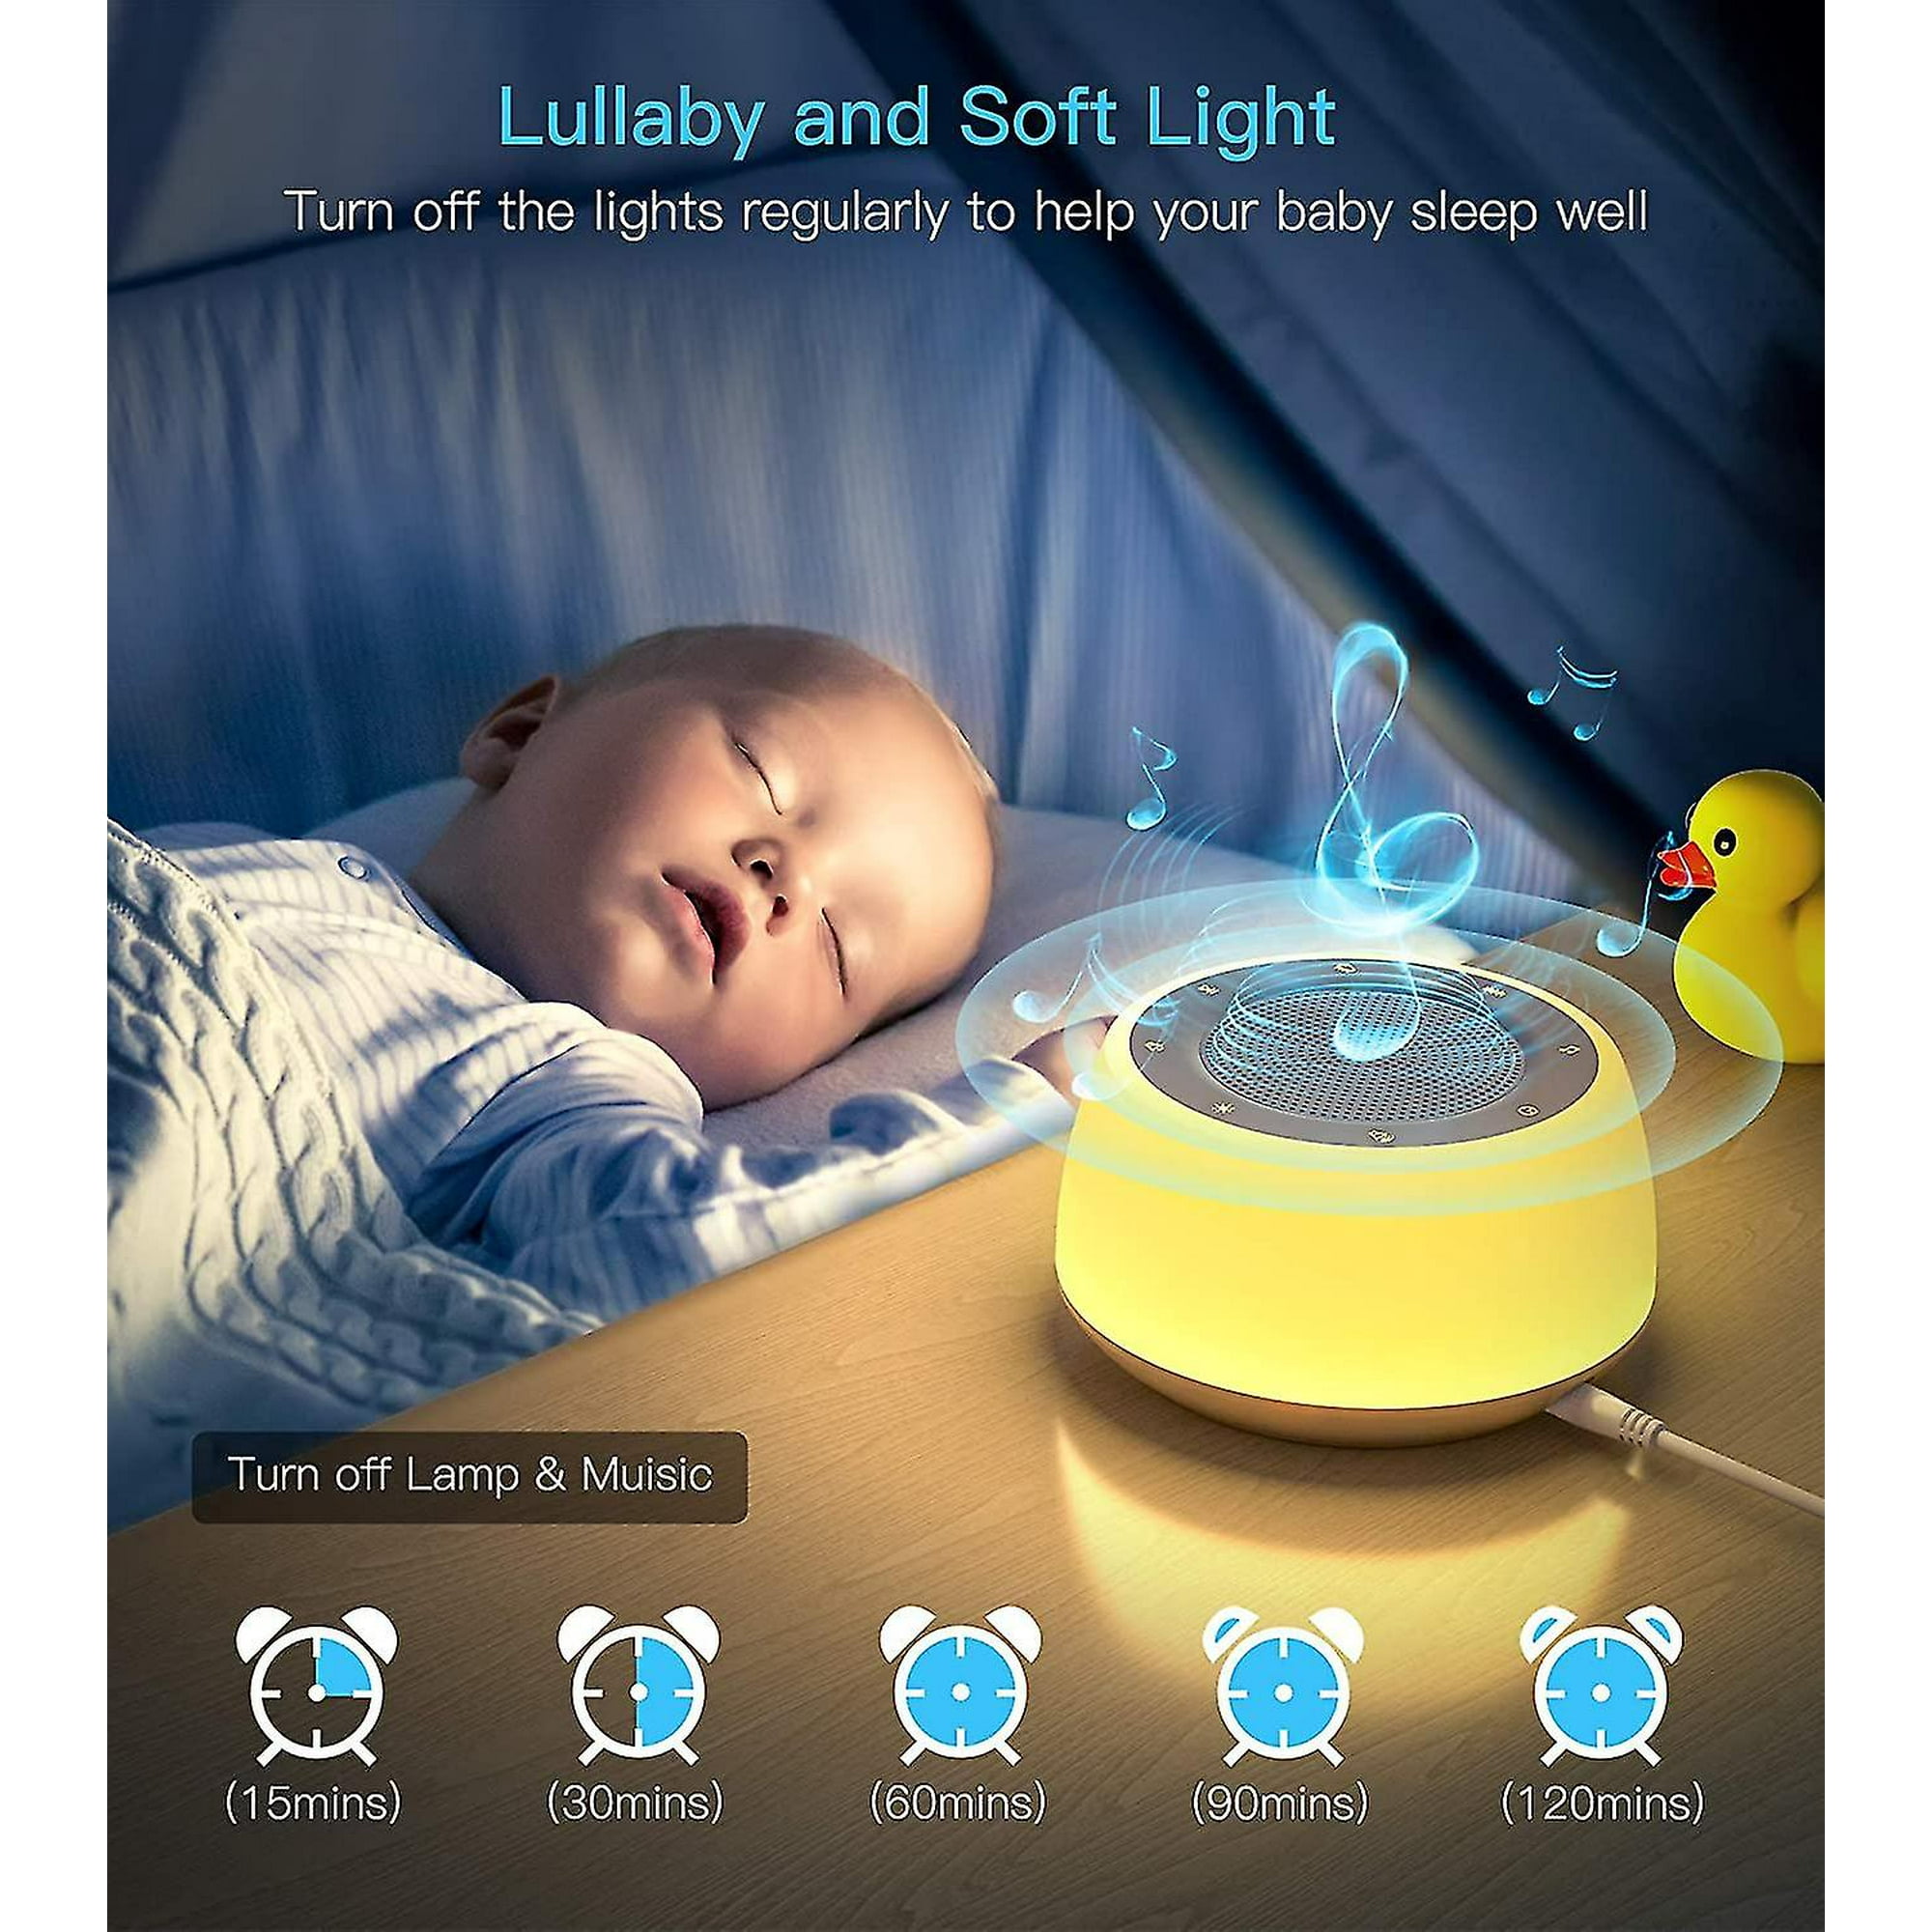 Bruit blanc : est-ce efficace pour endormir bébé ?